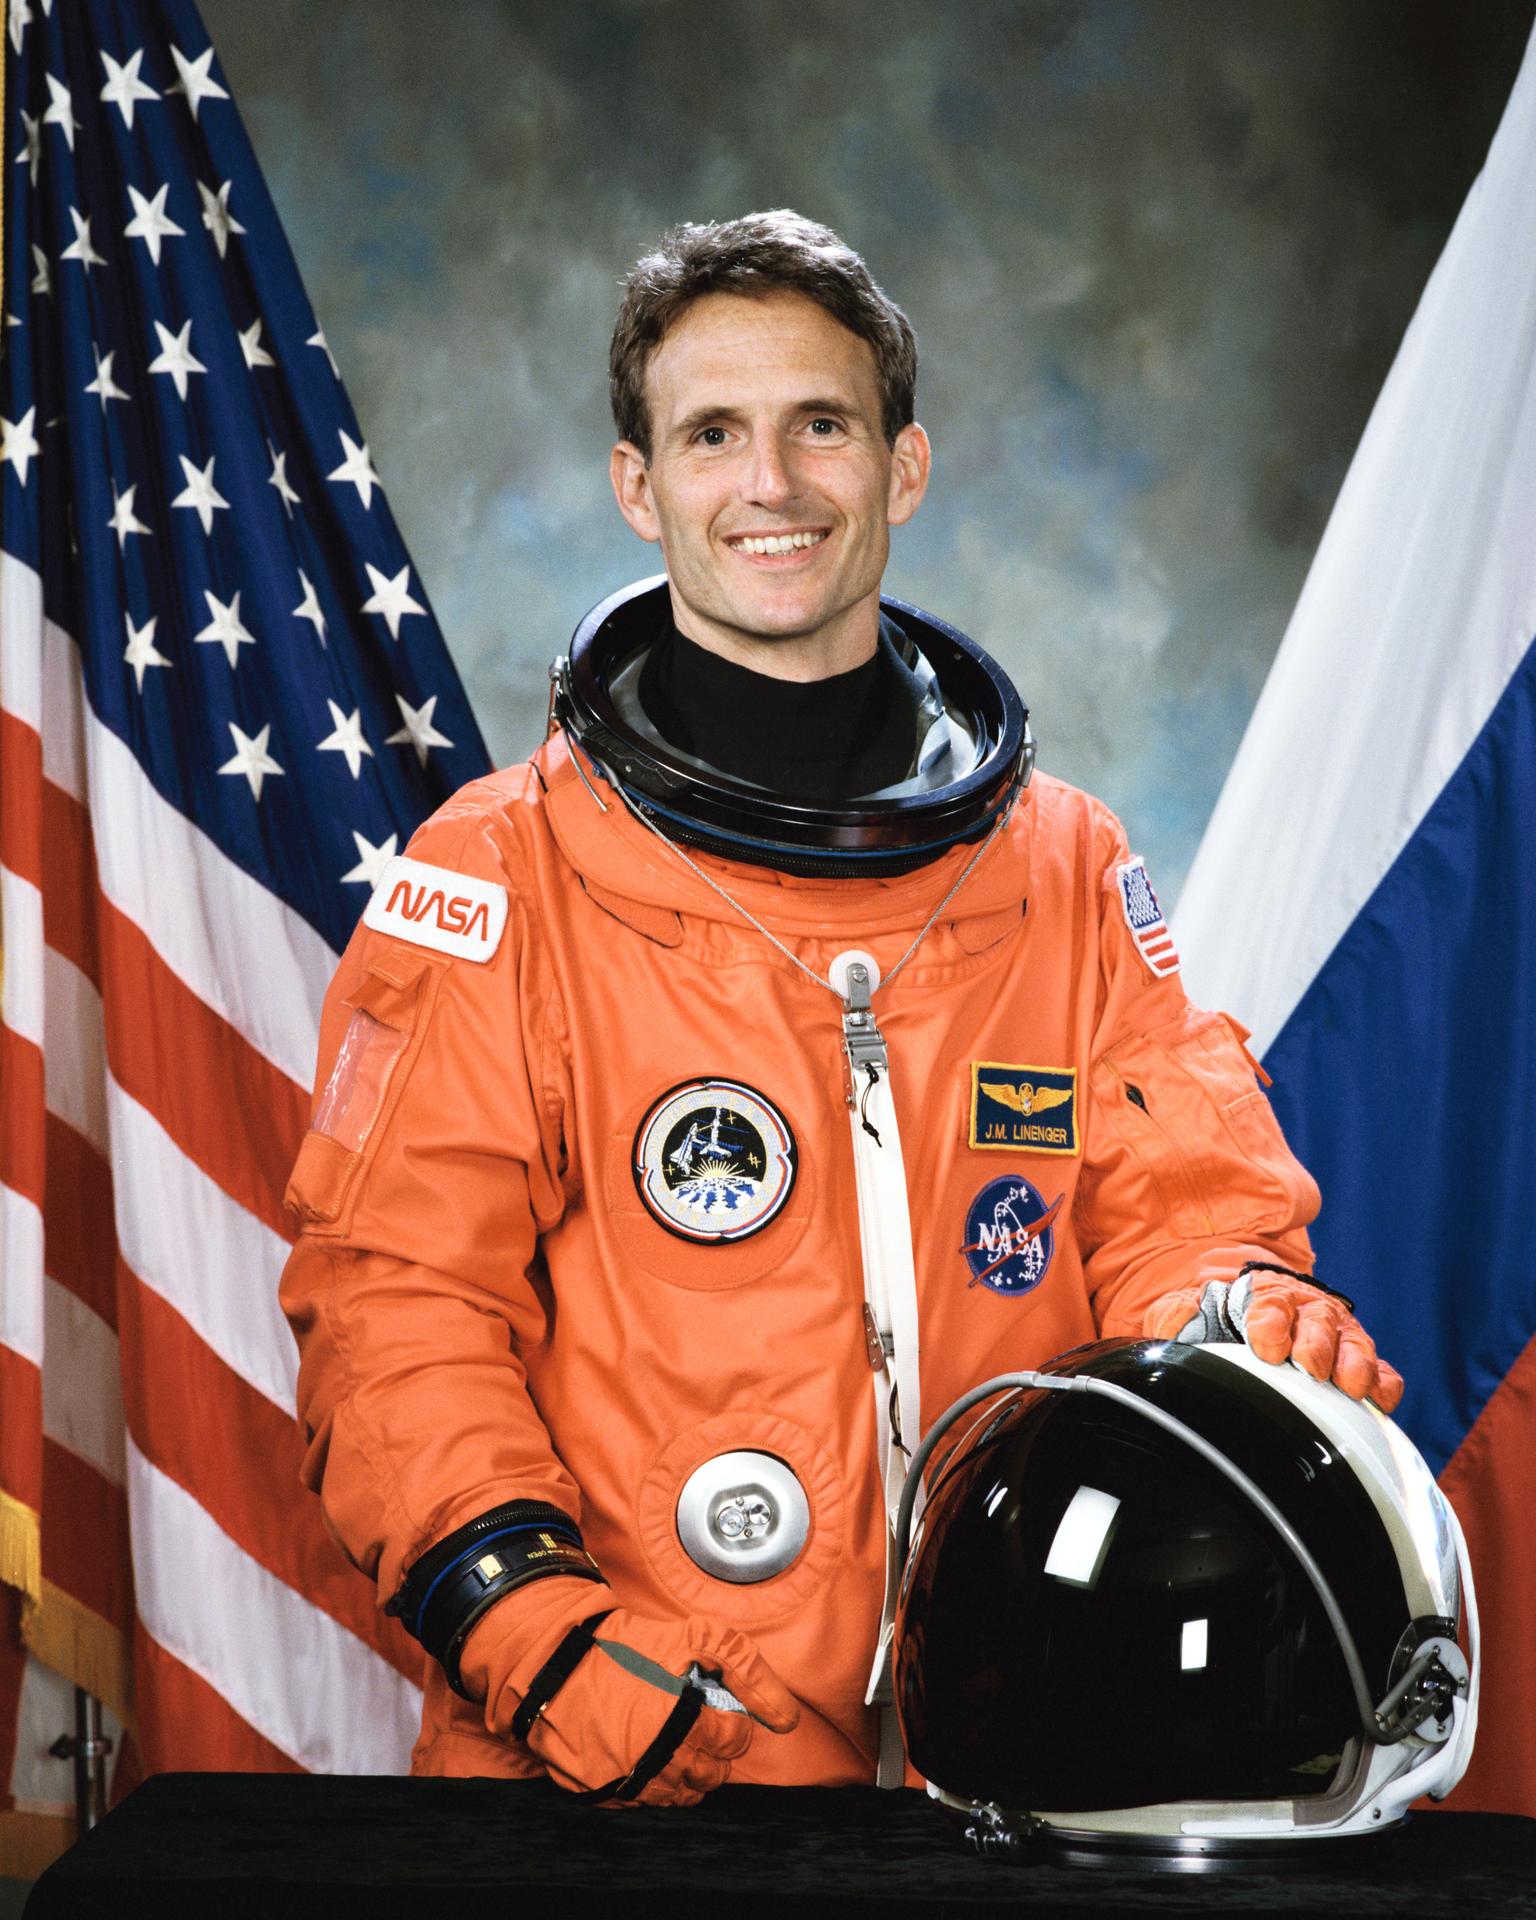 Official astronaut portrait for Jerry Linenger